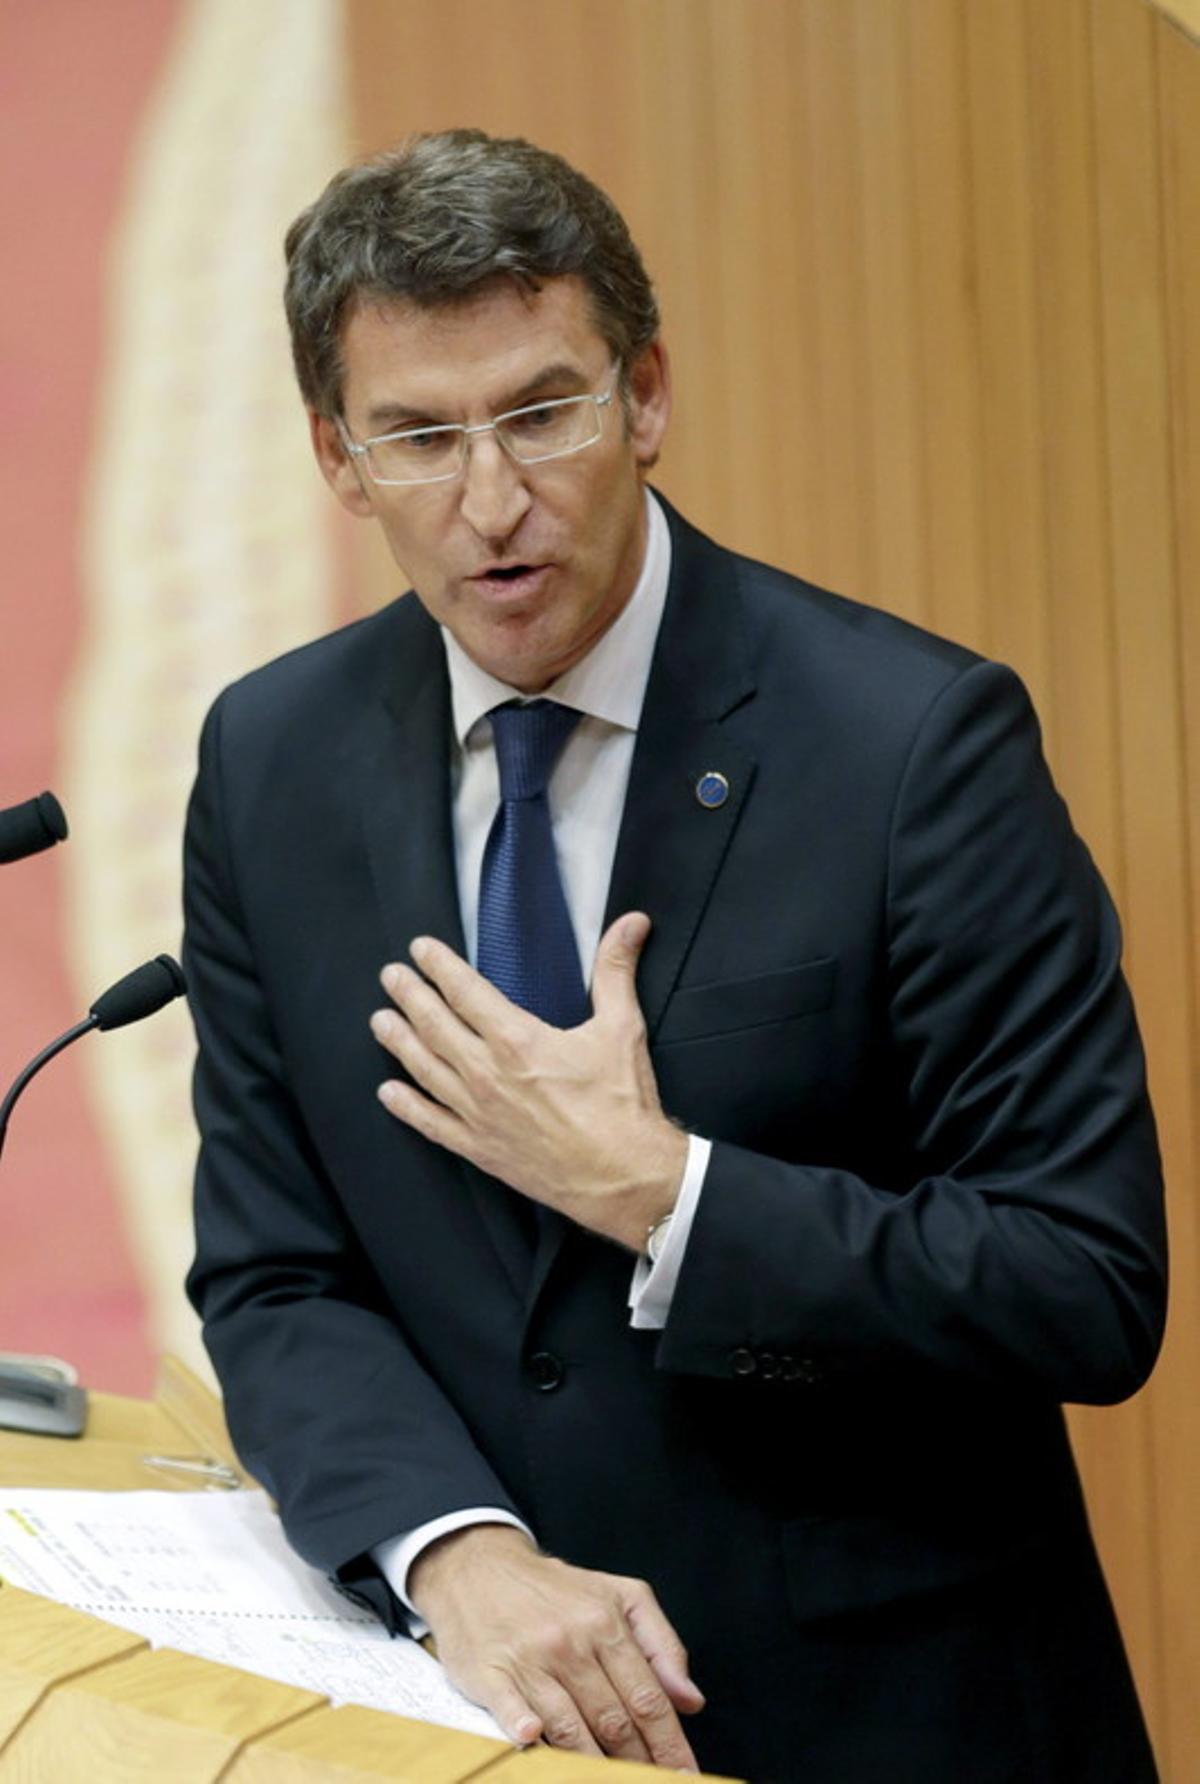 Feijóo convoca les eleccions per al mateix dia que Euskadi